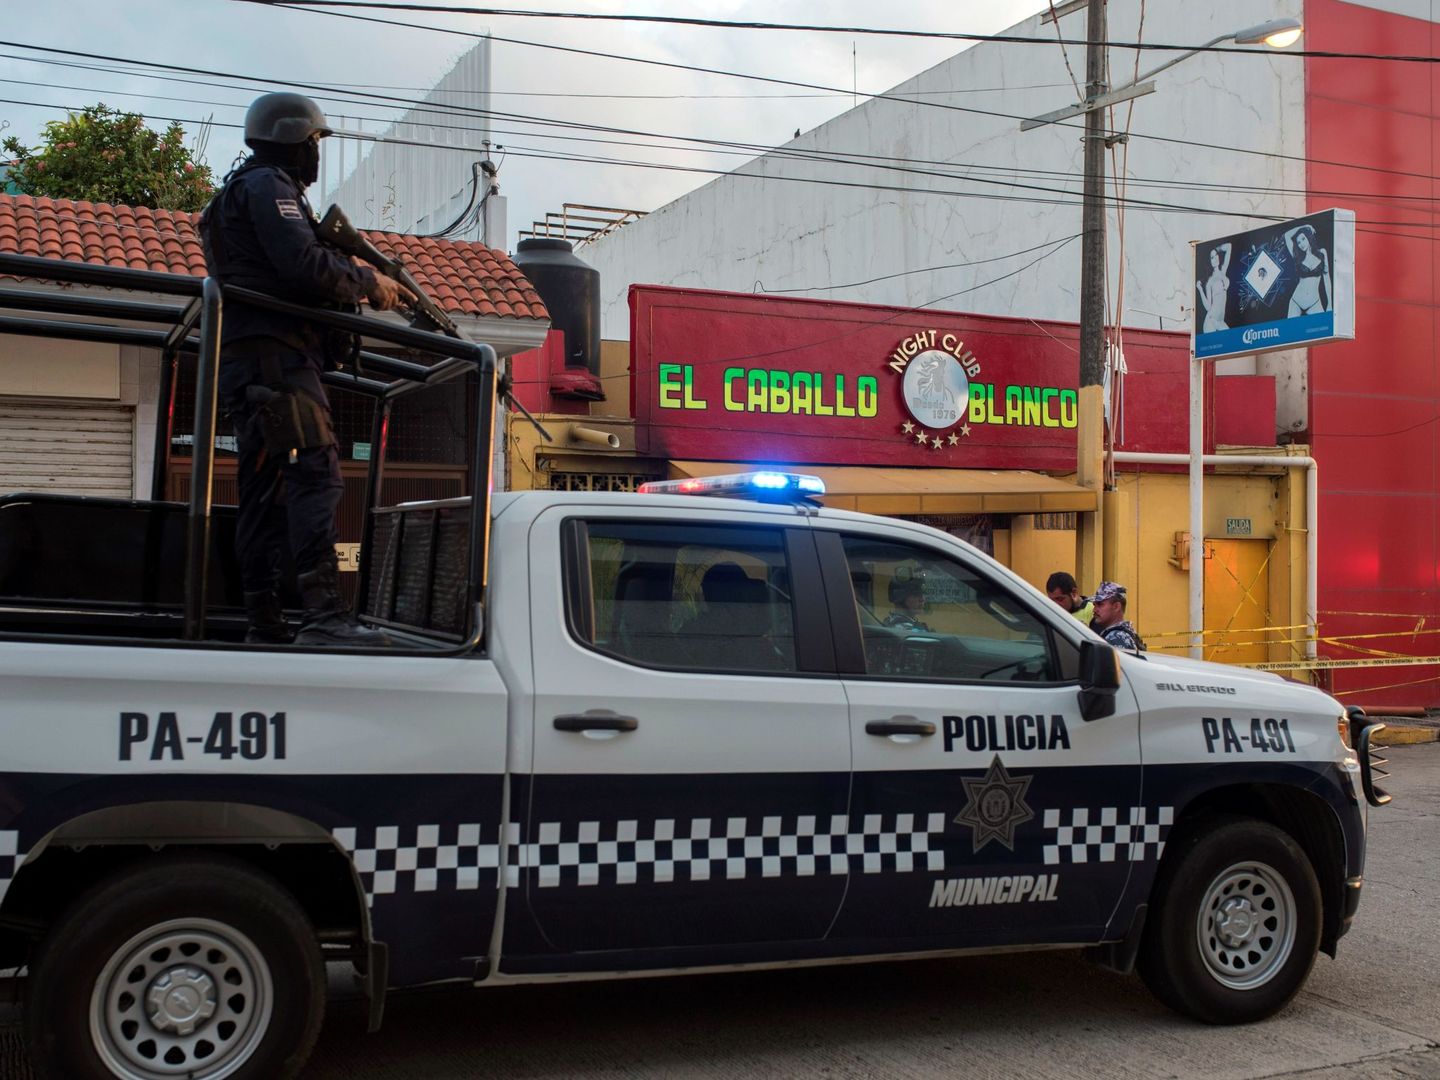 Agentes de la policía pasan este miércoles frente al bar El Caballo Blanco, atacado por un grupo armado, en Coatzacoalcos, en el estado de Veracruz (México). (Efe)